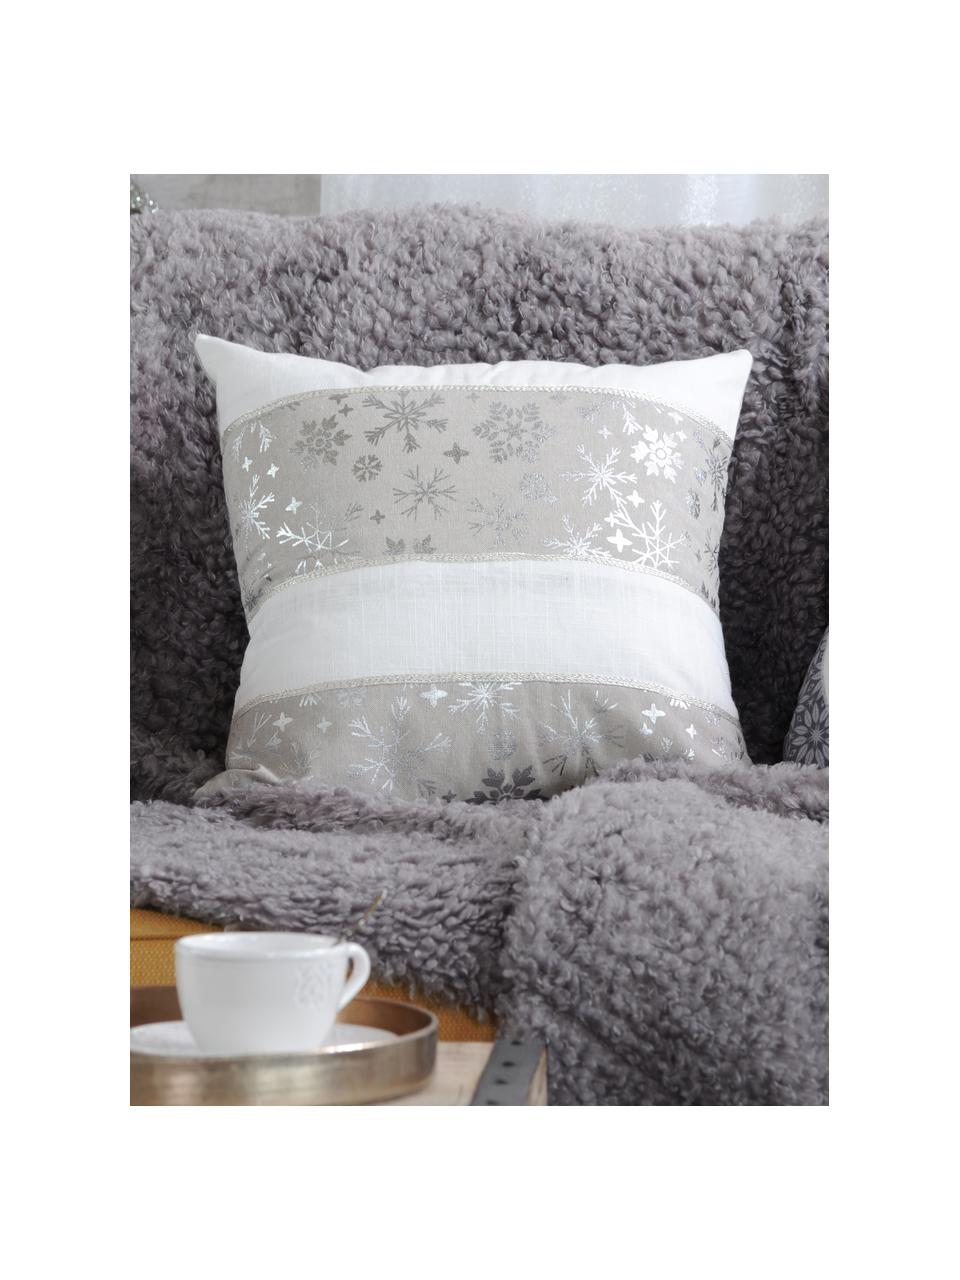 Kissen Laponie, mit Inlett, Bezug: Baumwolle, Grau, gebrochenes Weiß, Silberfarben, 40 x 40 cm